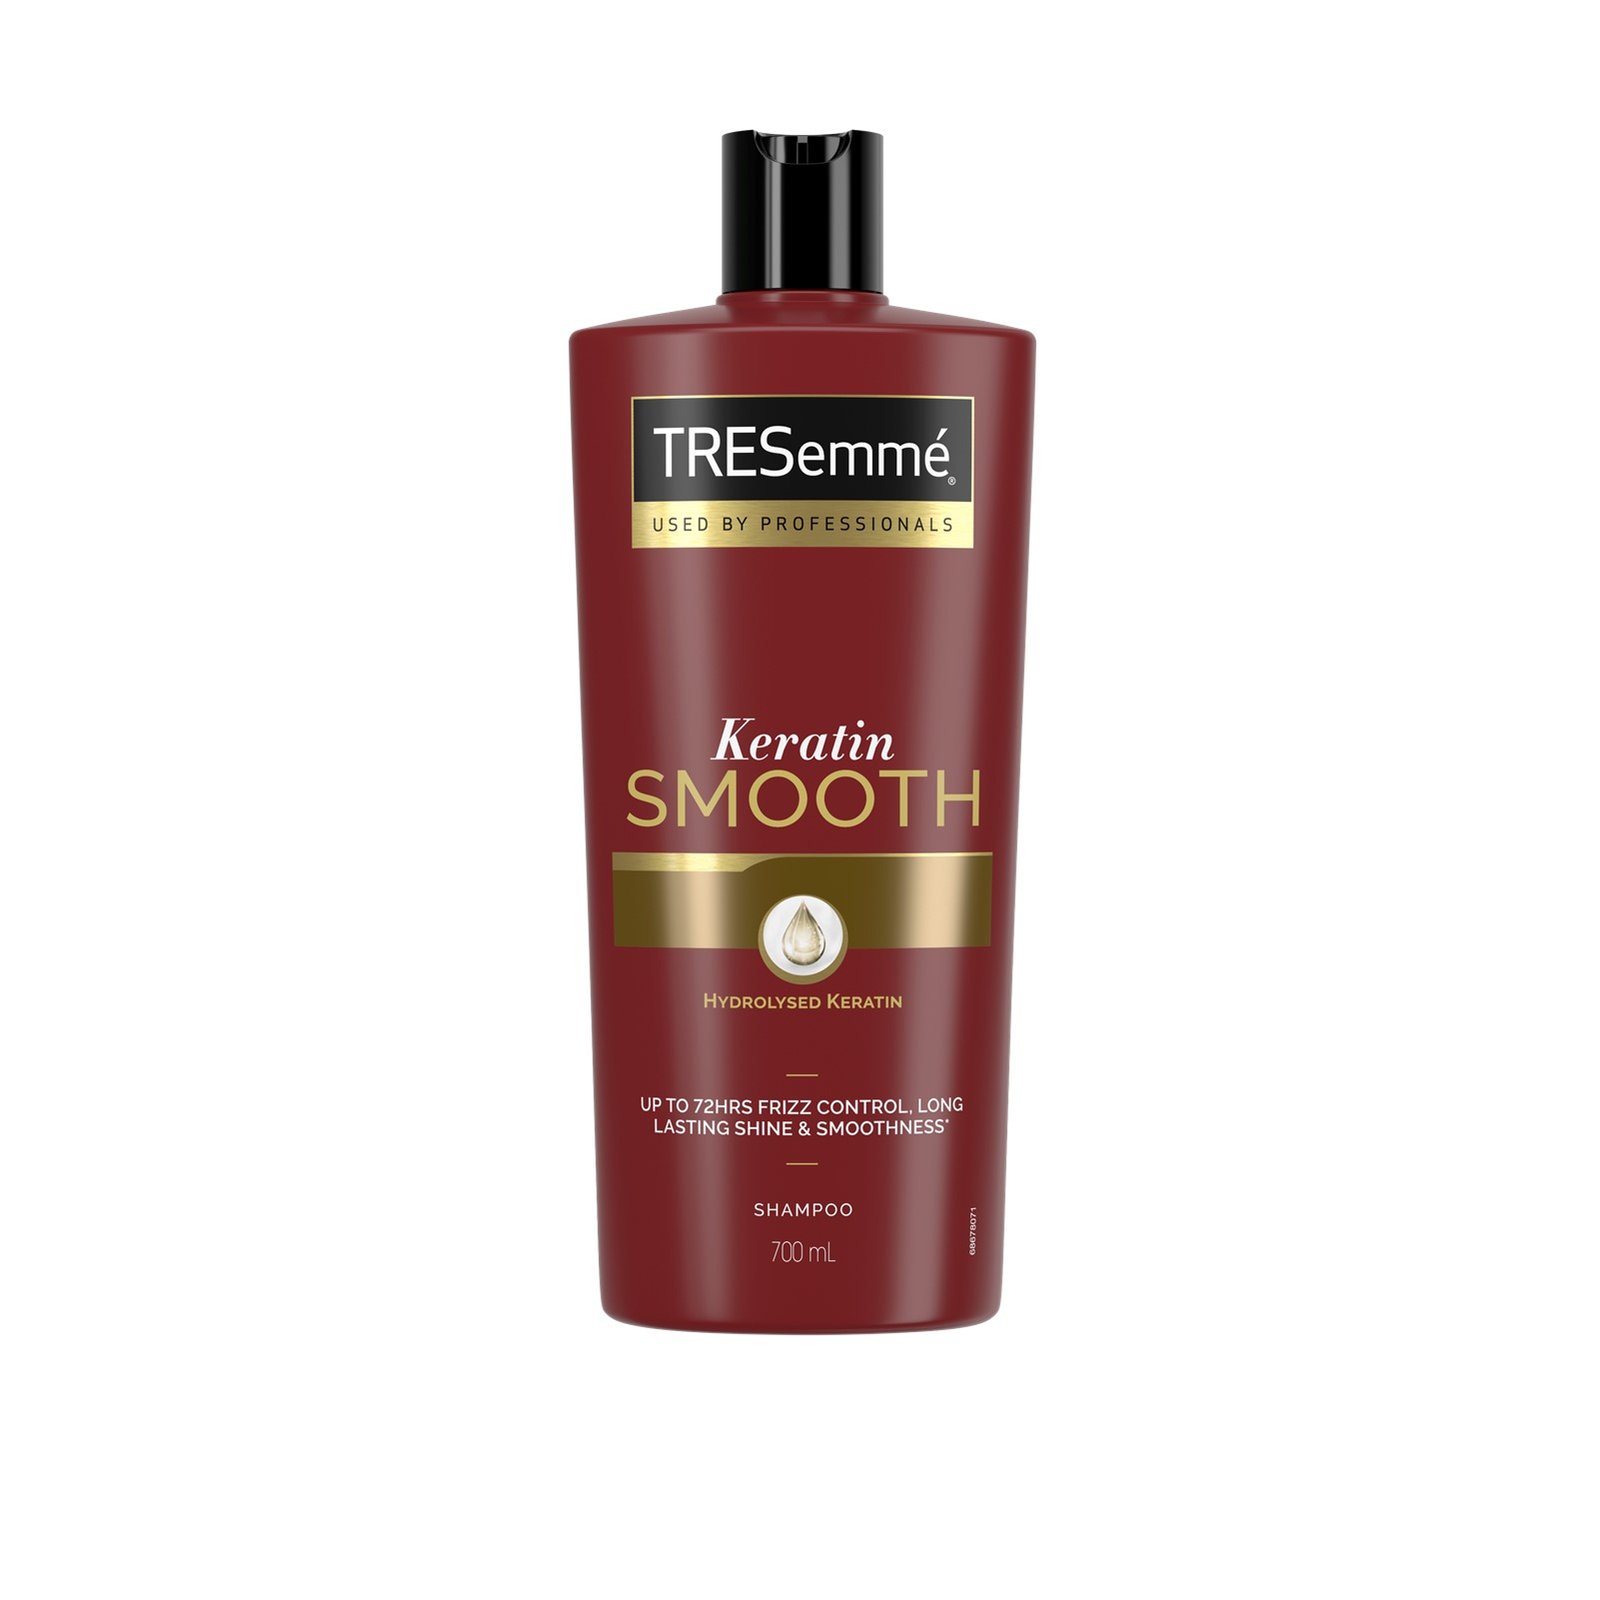 TRESemmé Keratin Smooth Shampoo 700ml (23.6 fl oz)